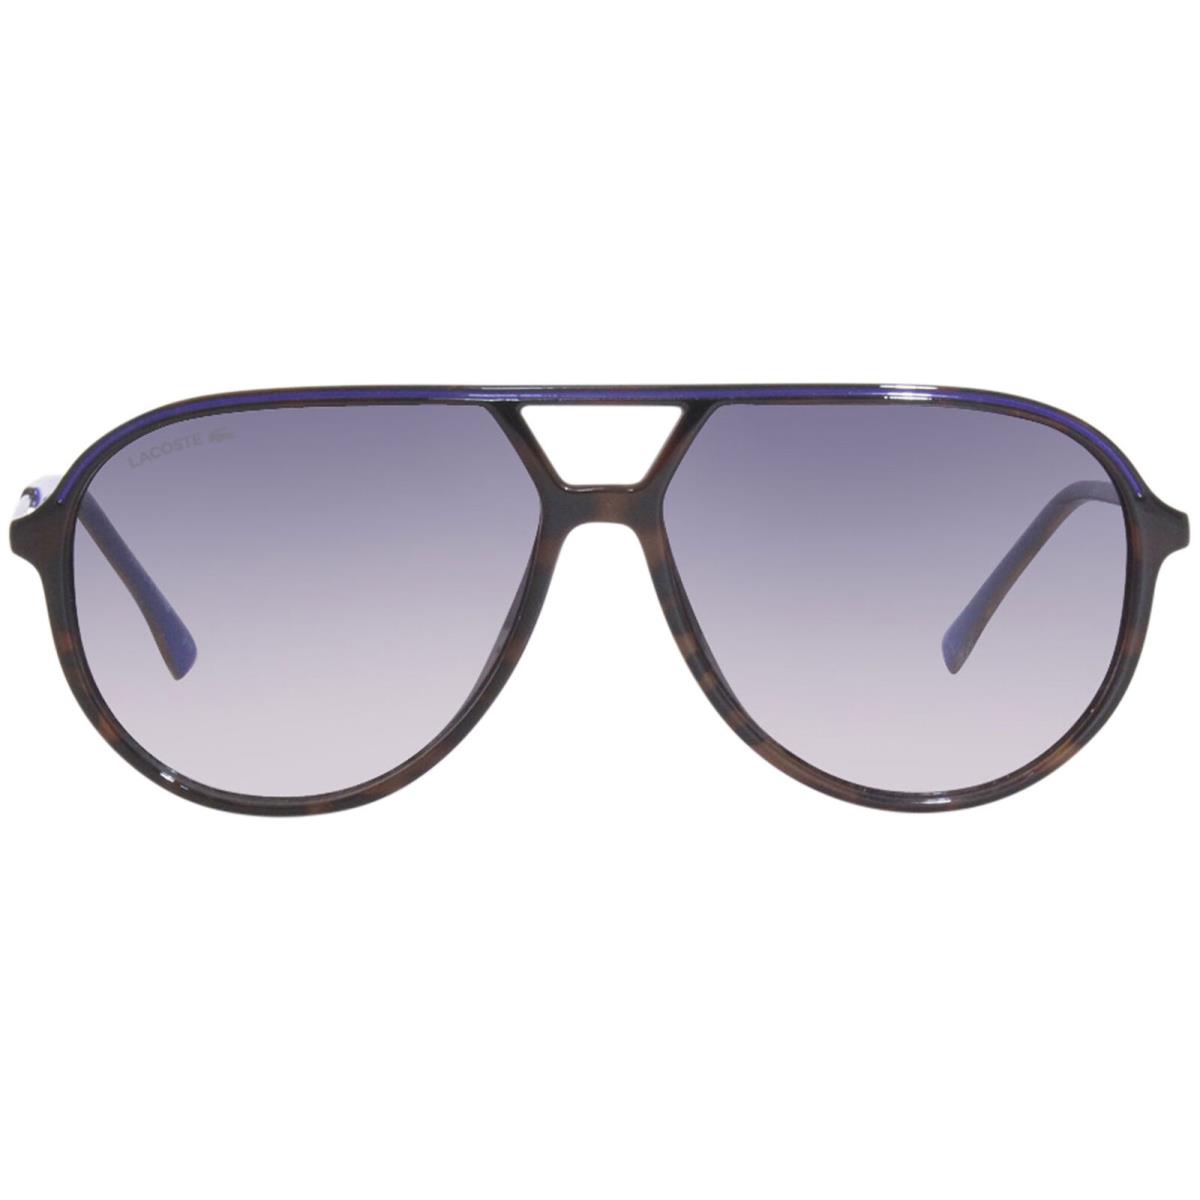 Lacoste L927 214 Sunglasses Men`s Havana/grey Gradient Lenses Pilot 59mm - Havana Frame, Gray Lens